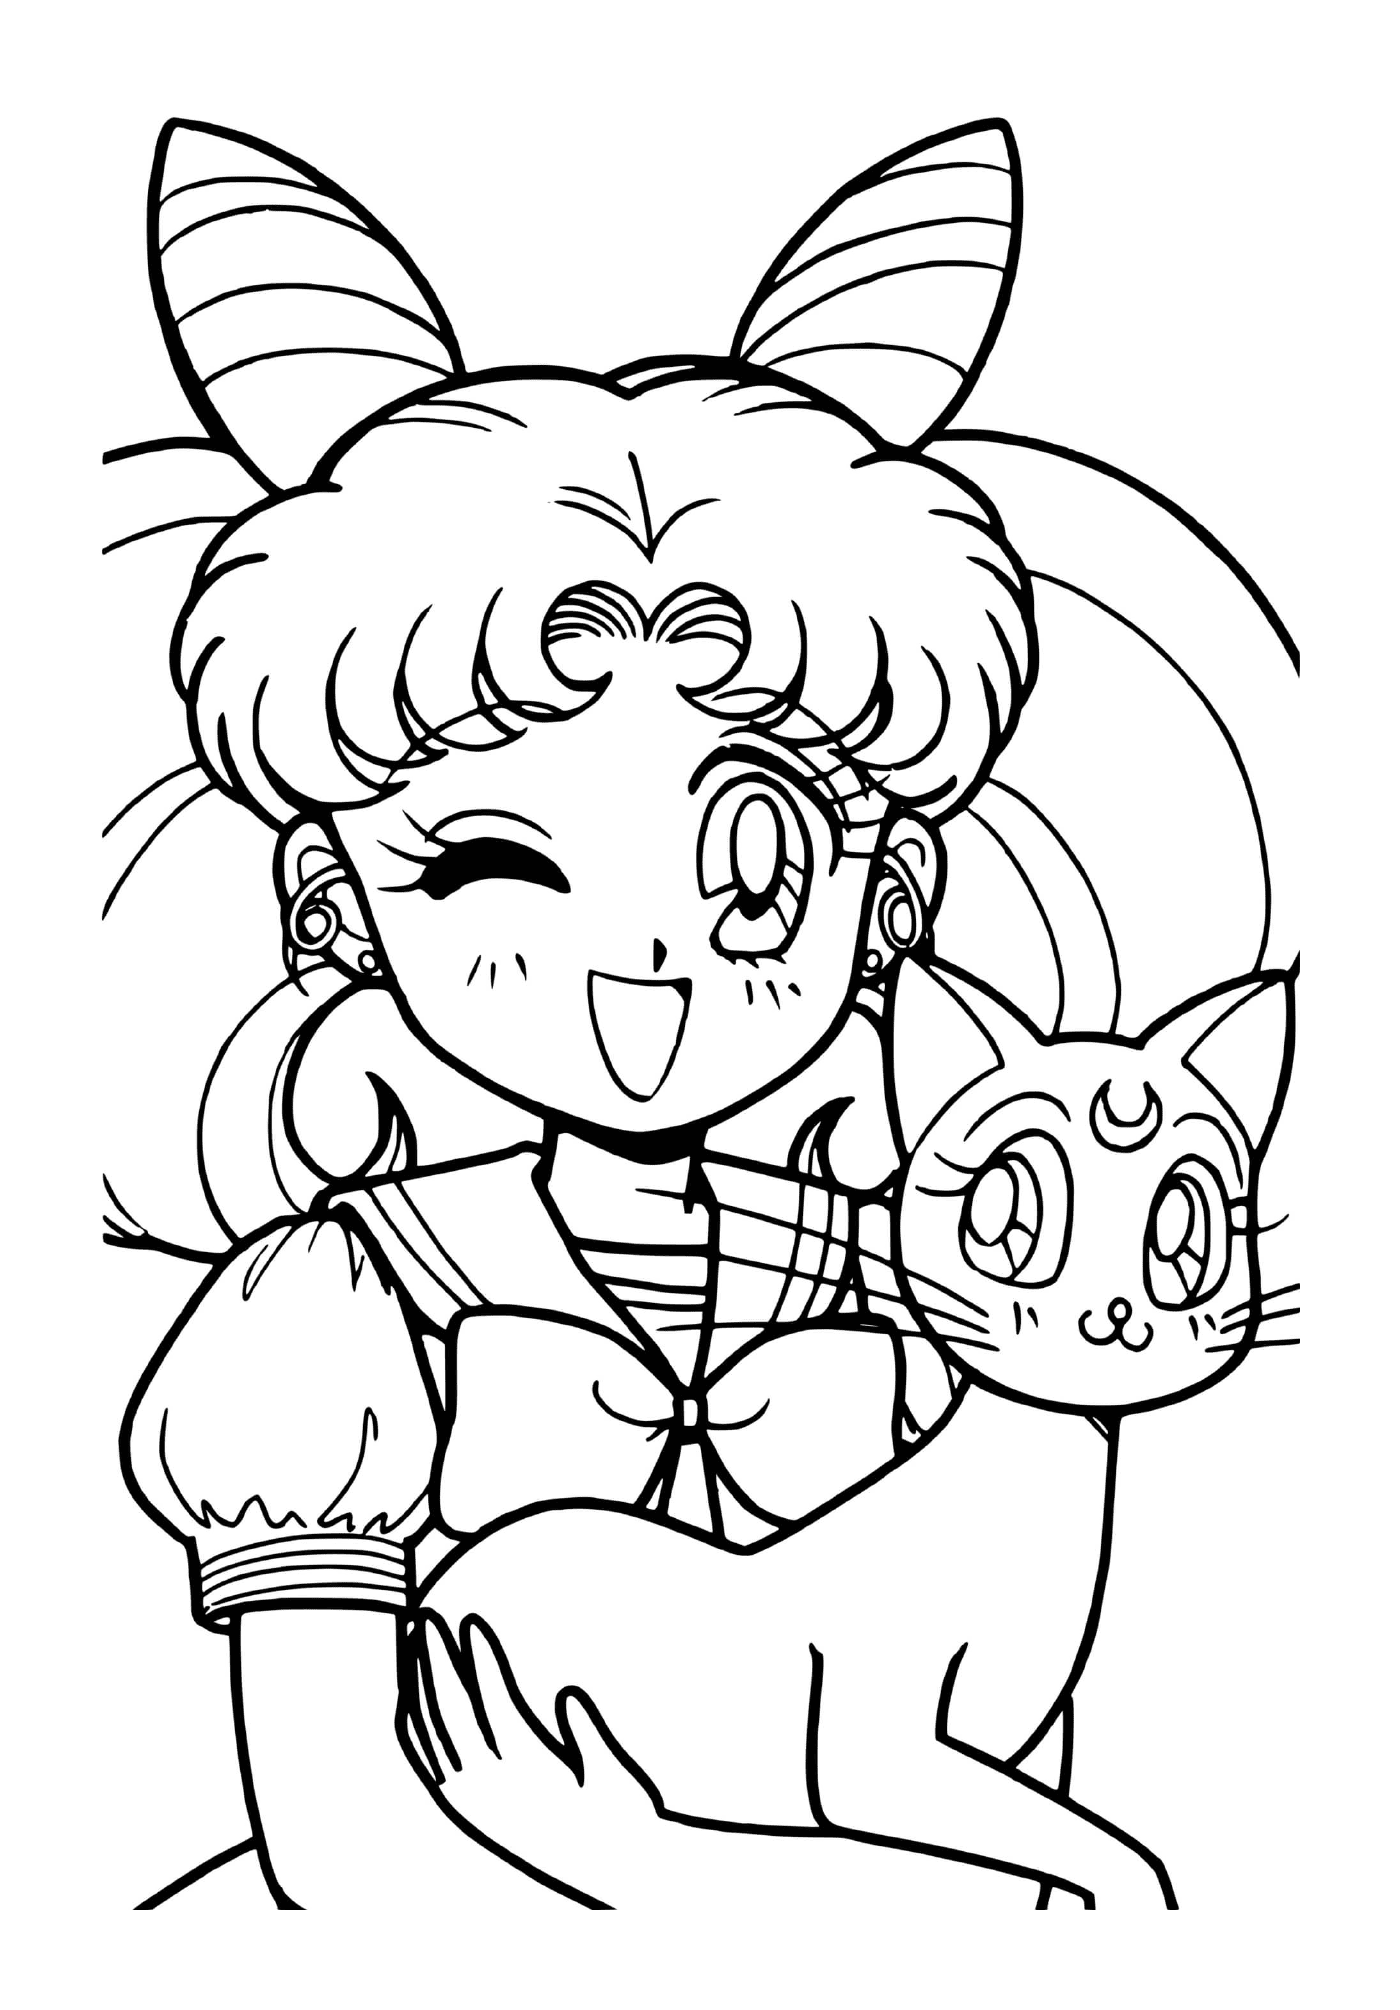  Sailor Moon und seine Katze 